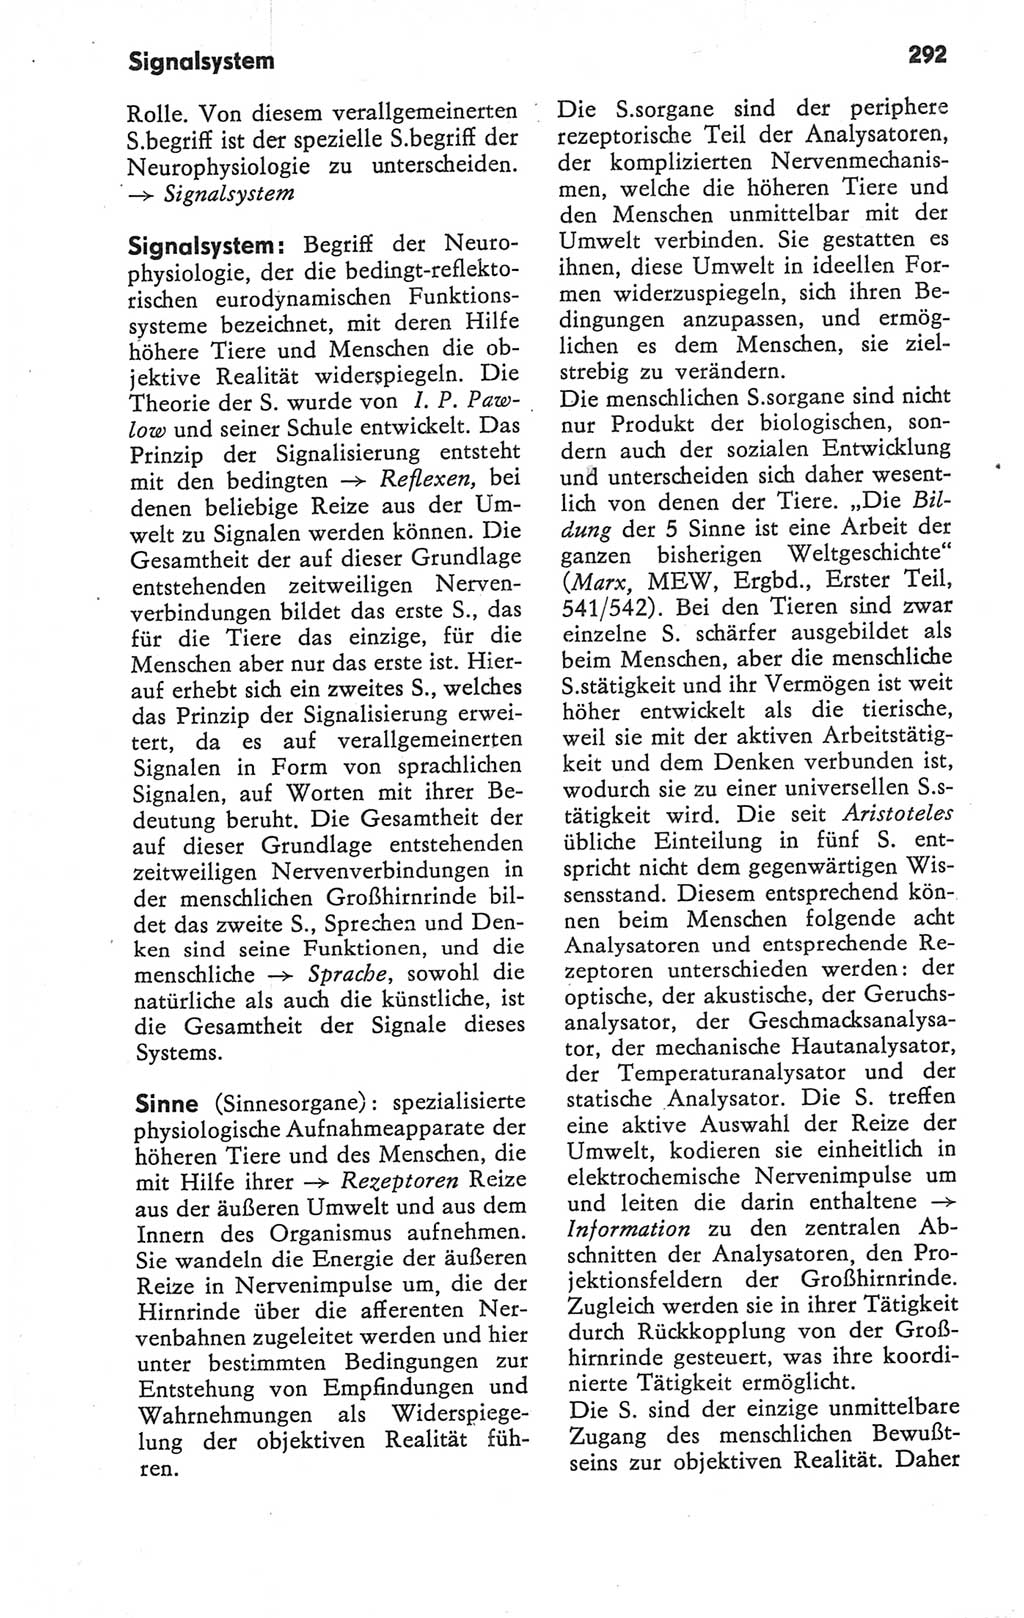 Kleines Wörterbuch der marxistisch-leninistischen Philosophie [Deutsche Demokratische Republik (DDR)] 1979, Seite 292 (Kl. Wb. ML Phil. DDR 1979, S. 292)